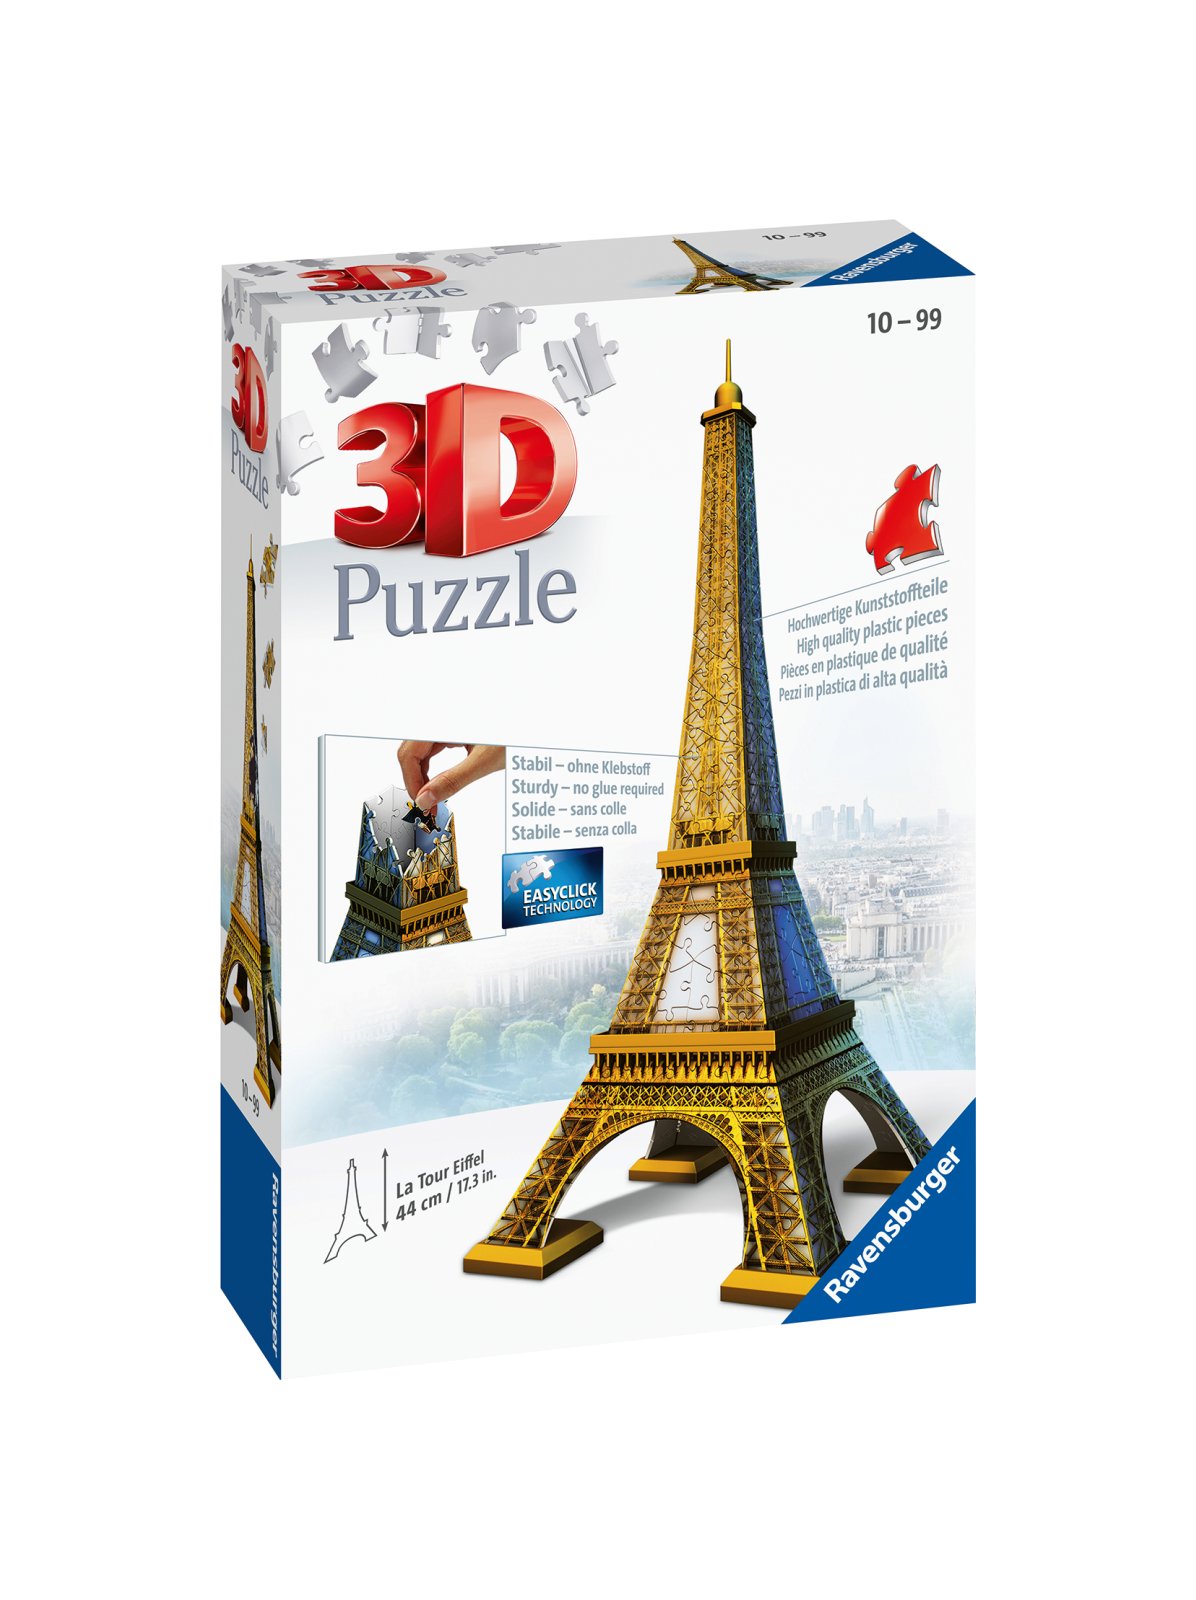 Ravensburger - 3d puzzle tour eiffel, parigi, 216 pezzi, 10+ anni - RAVENSBURGER, RAVENSBURGER 3D PUZZLE